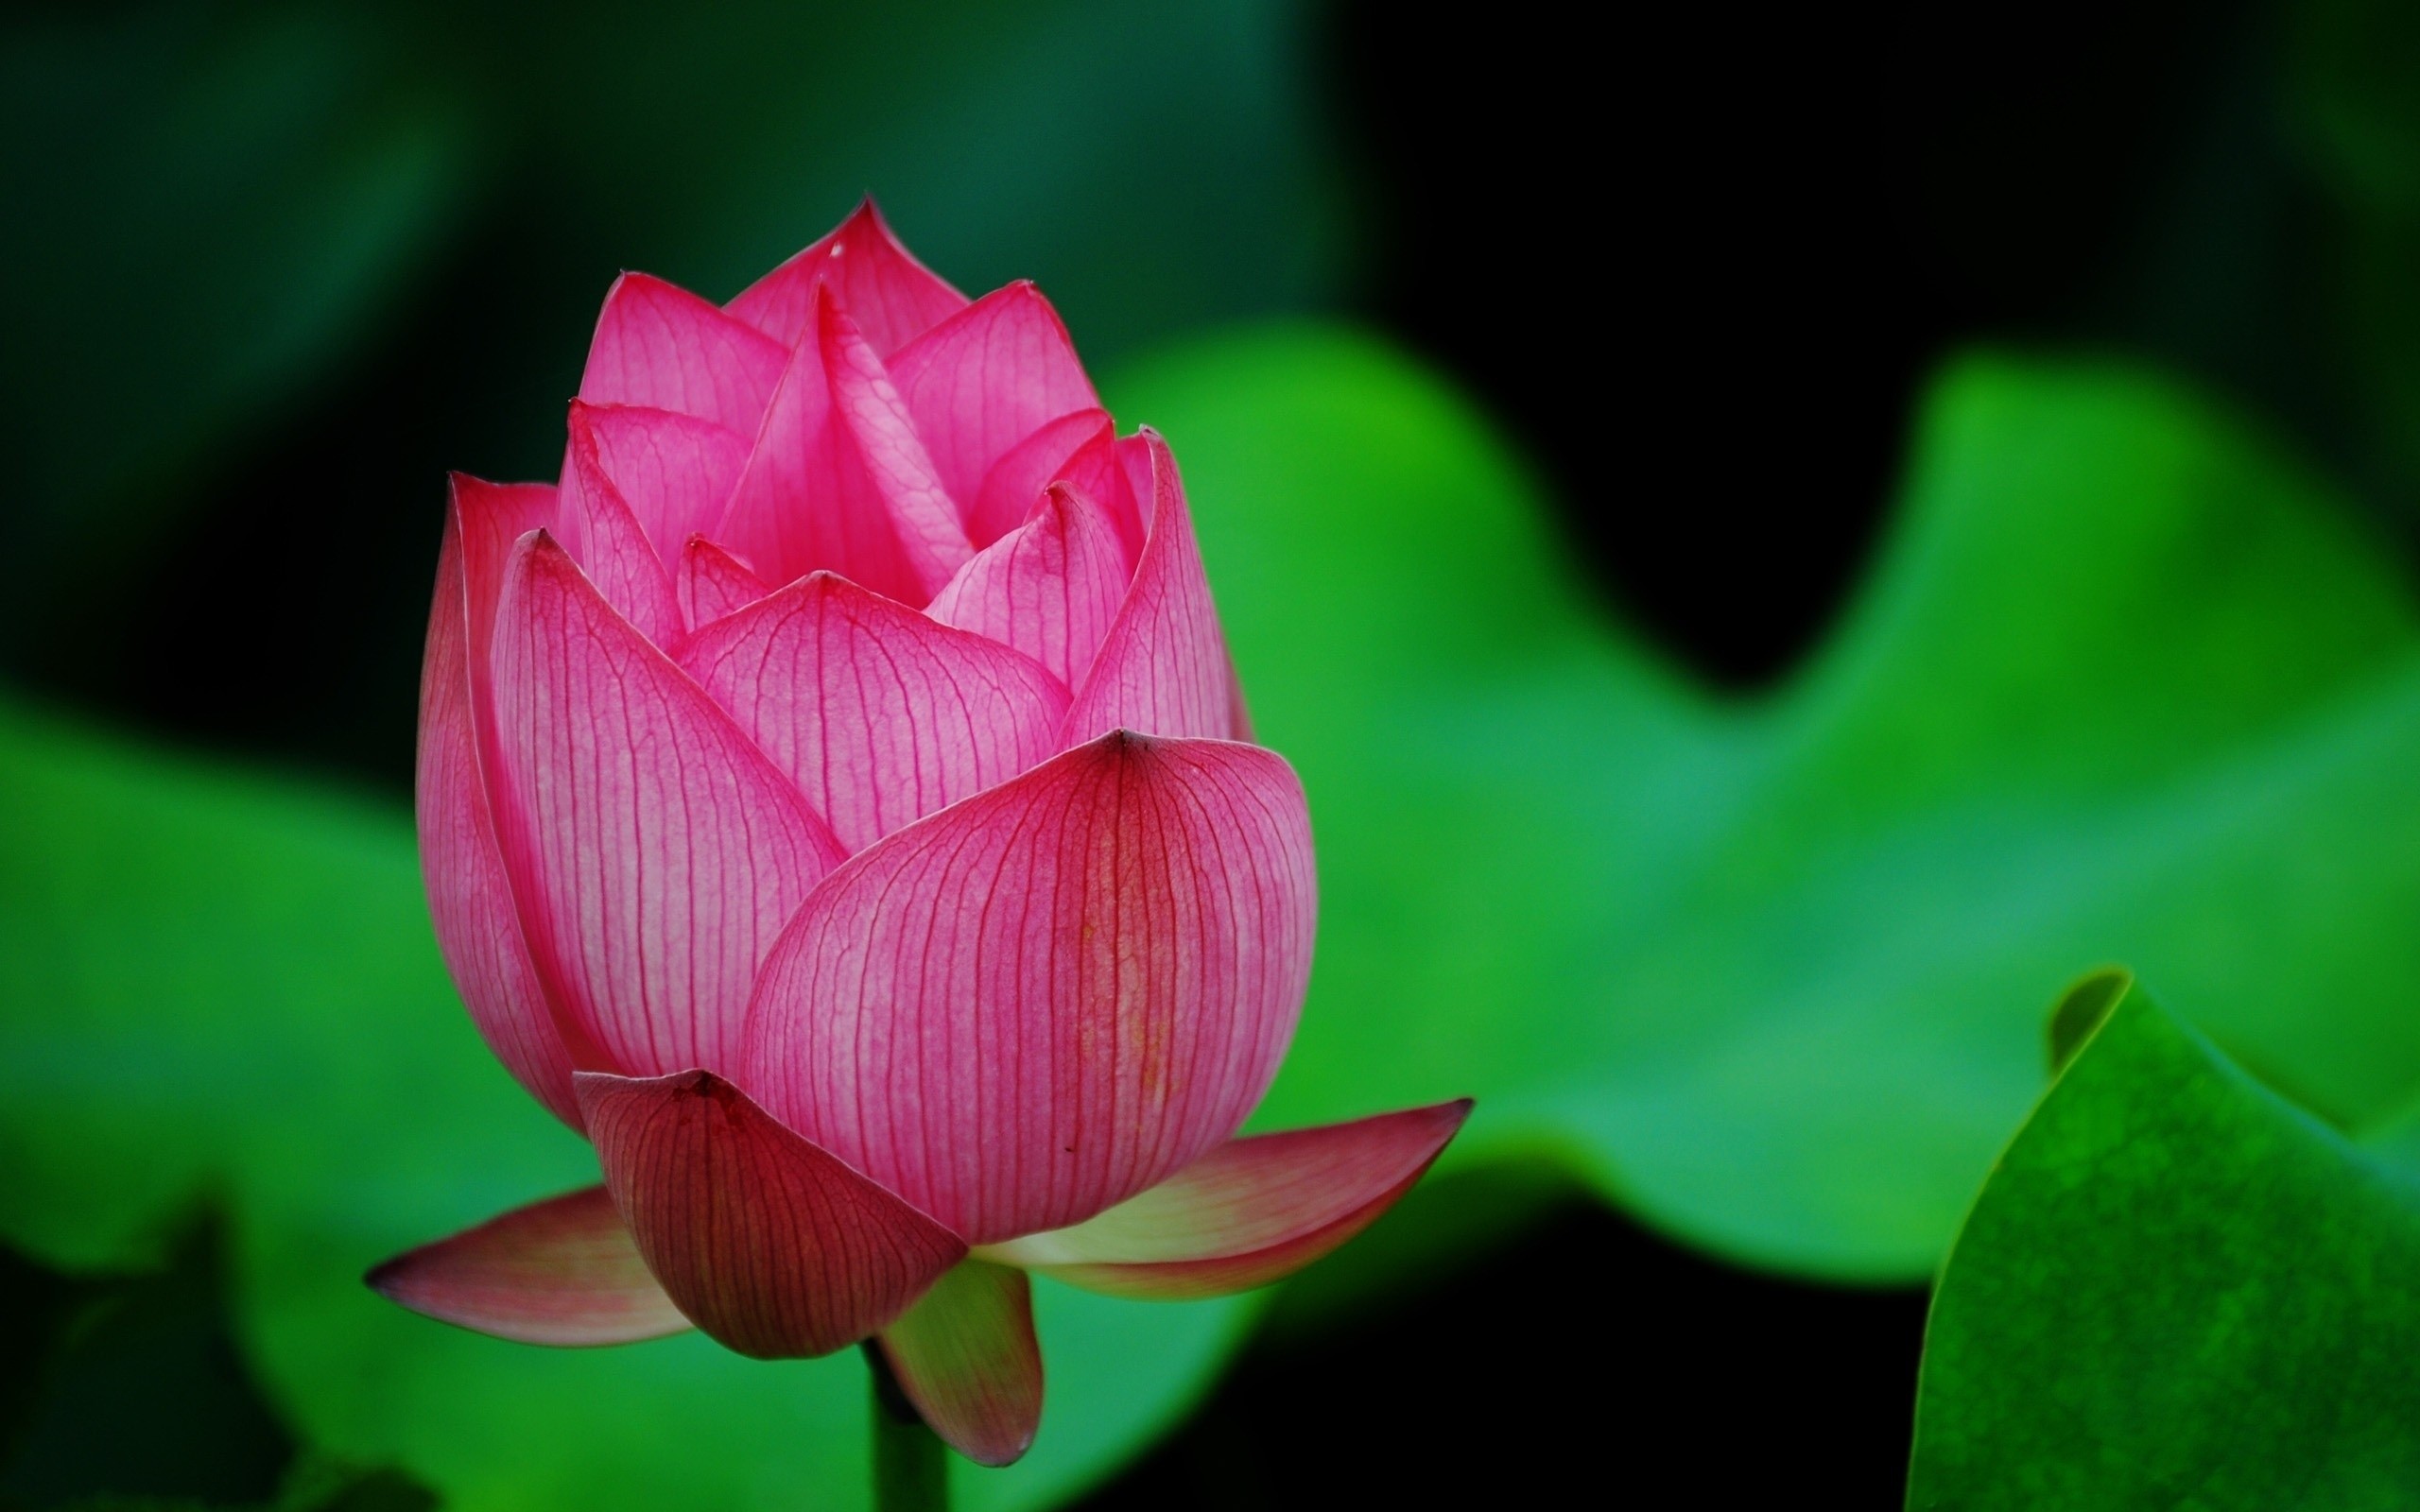 Lotus Flower Download - 2560x1600 Wallpaper 